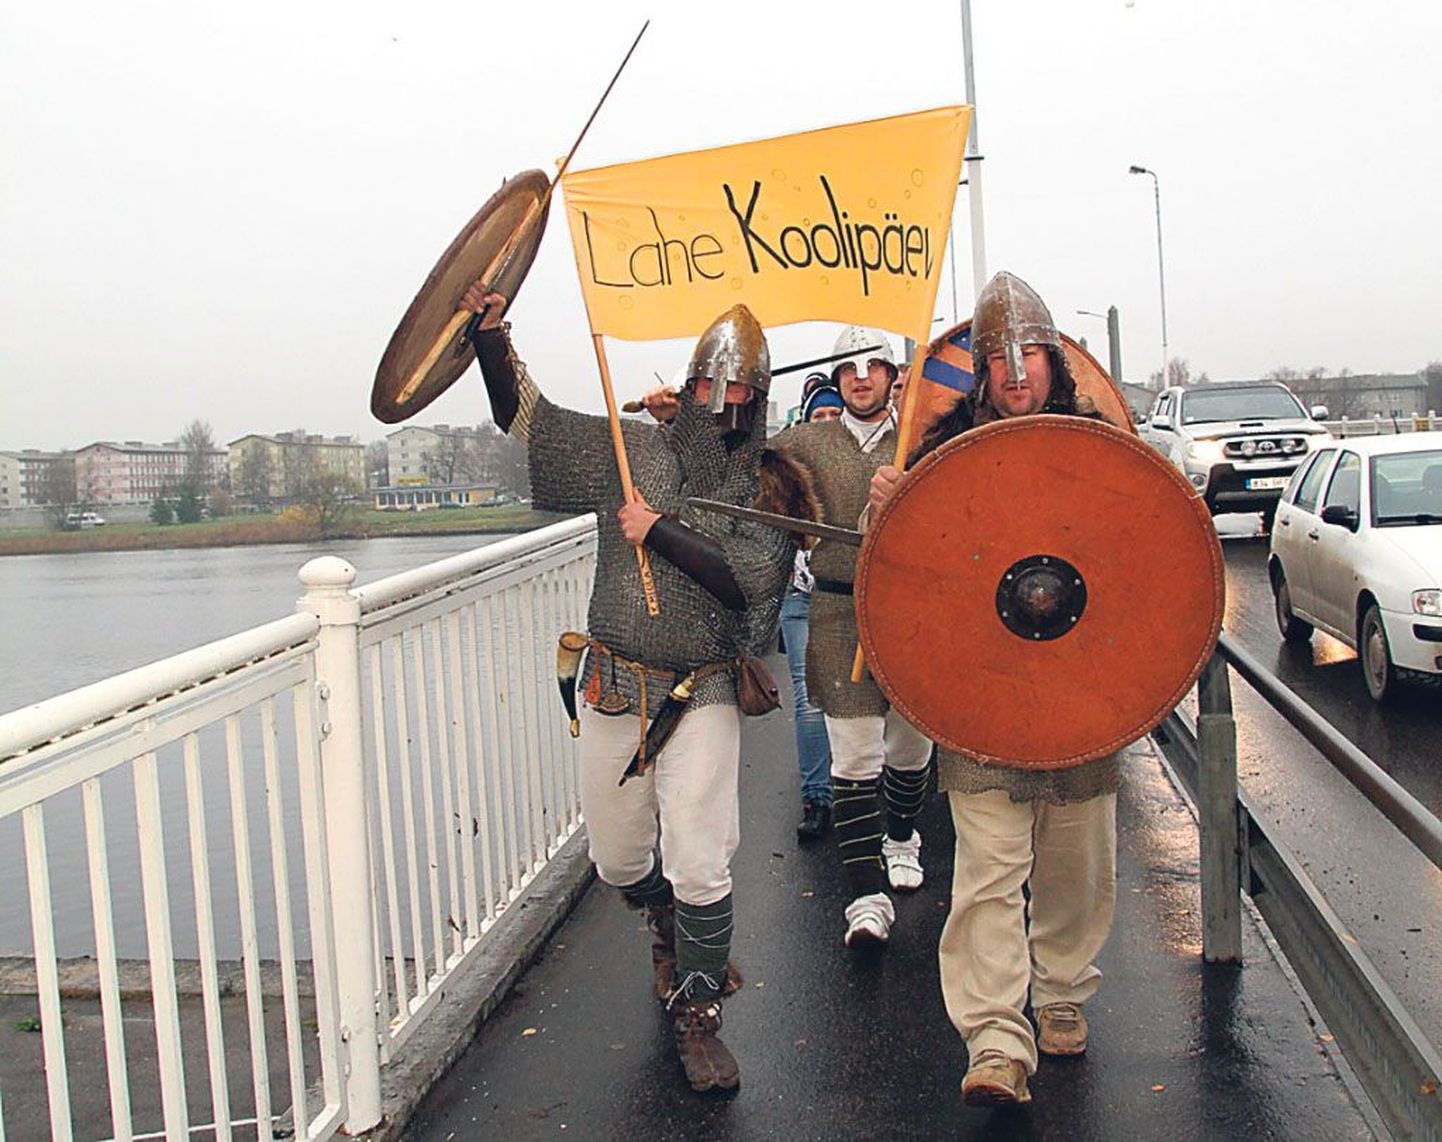 Turvistes ja paljastatud mõõkadega viikingite juhtimisel sammus ligi 700 üle kogu Eesti kokku sõitnud noort eile üle Pärnu Kesklinna silla kontserdimajja konverentsile. 
Et mõtted libedamalt liiguks, pihustati noored silla Uus-Pärnu poolses otsas vahuga üle.